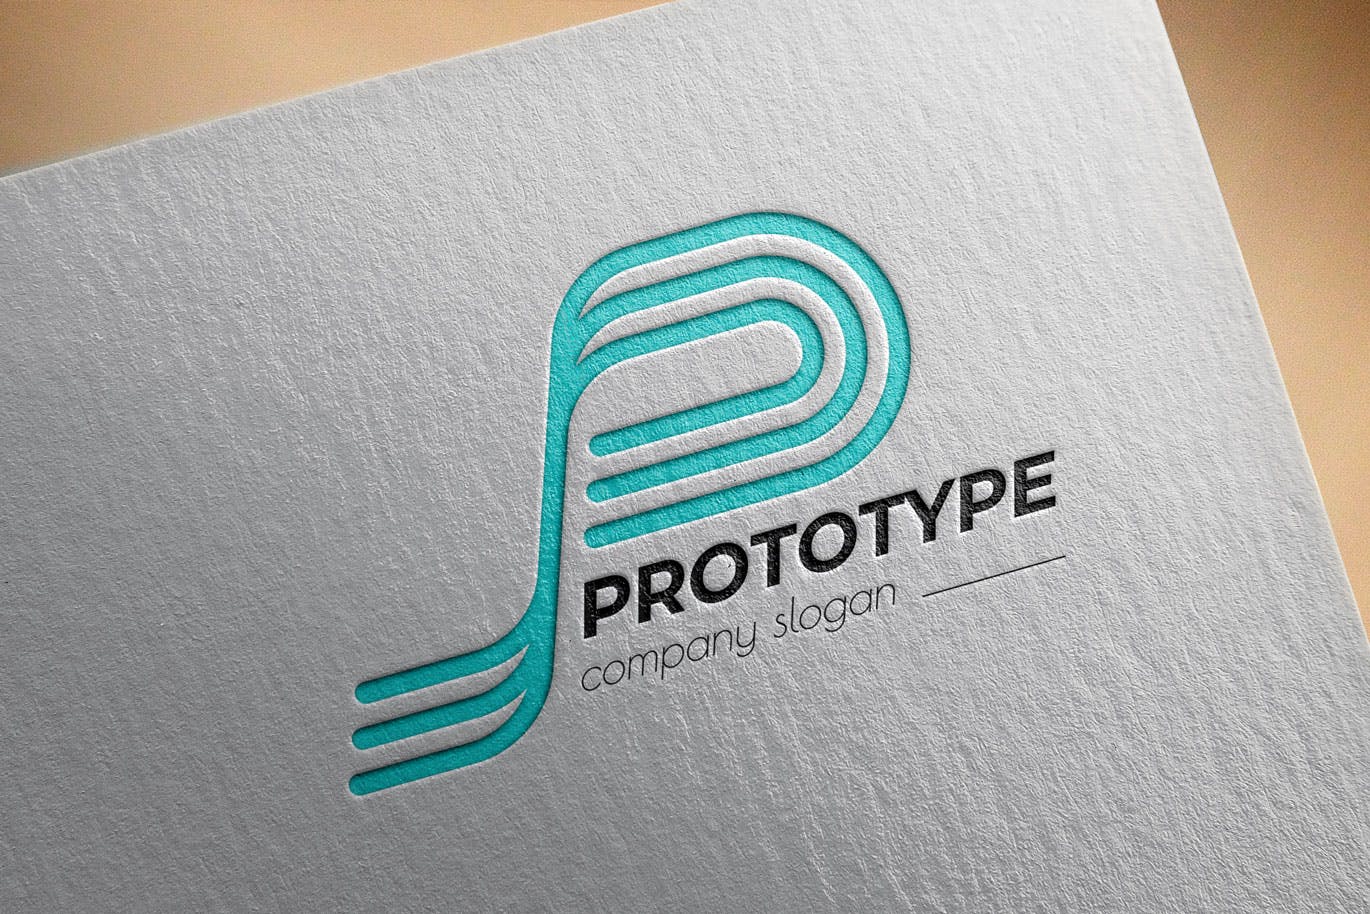 原型设计主题创意图形Logo设计素材库精选模板 Prototype Creative Logo Template插图(2)